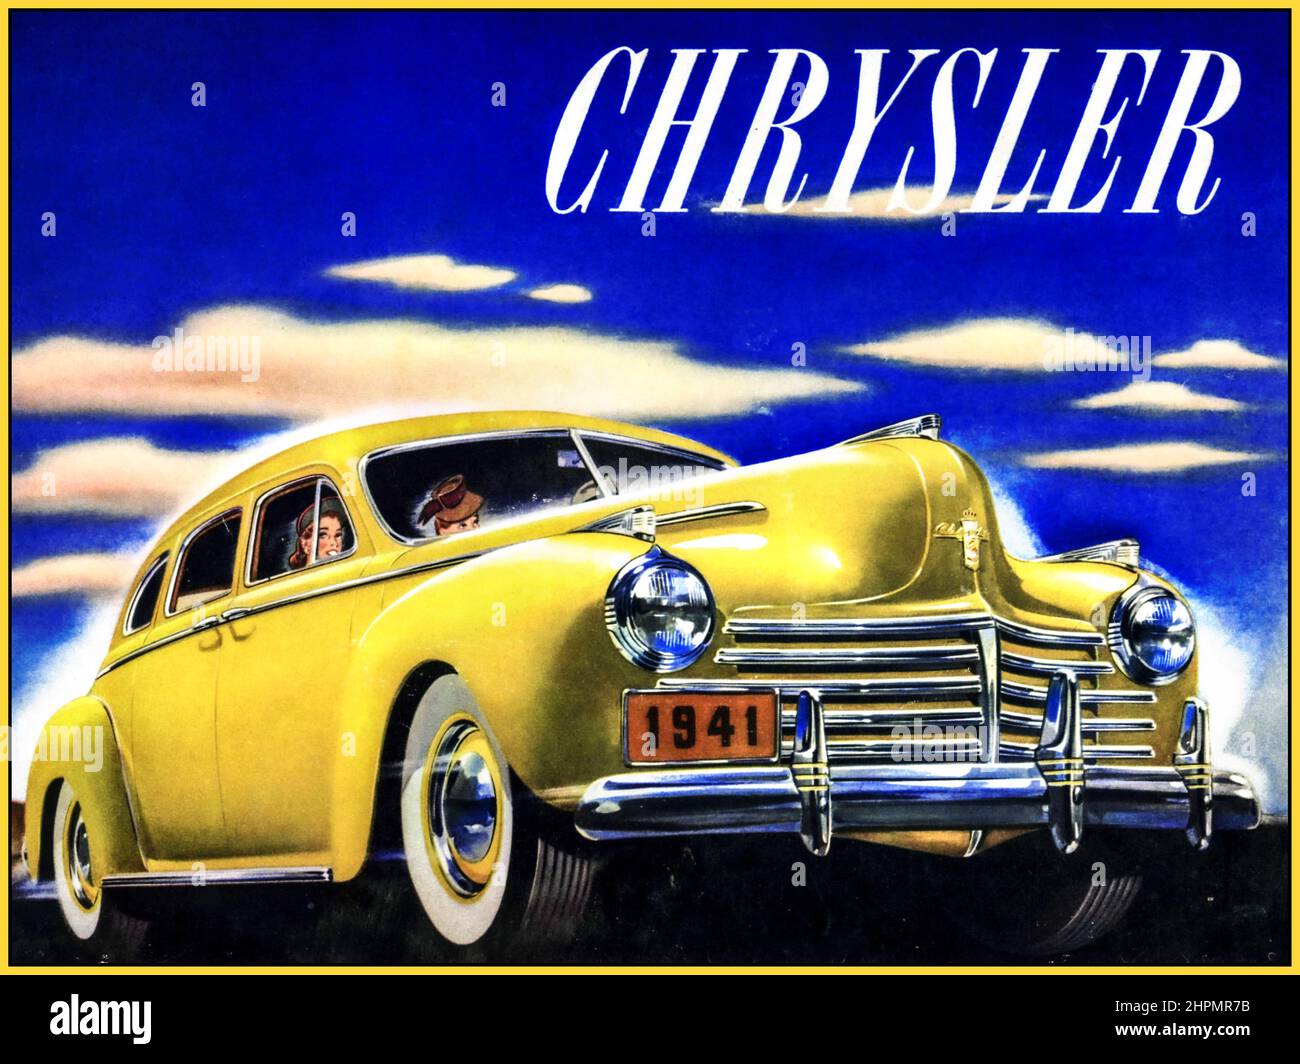 Berline Chrysler 1941 6 places Brochure automobile américaine Illustration USA la série C-33 Imperial Crown 1941 est restée exclusive et des modèles spéciaux étaient disponibles.boîte manuelle à 3 vitesses avec transmission fluide avec surmultipliée Vacamatic semi-automatique à 3 vitesses Banque D'Images